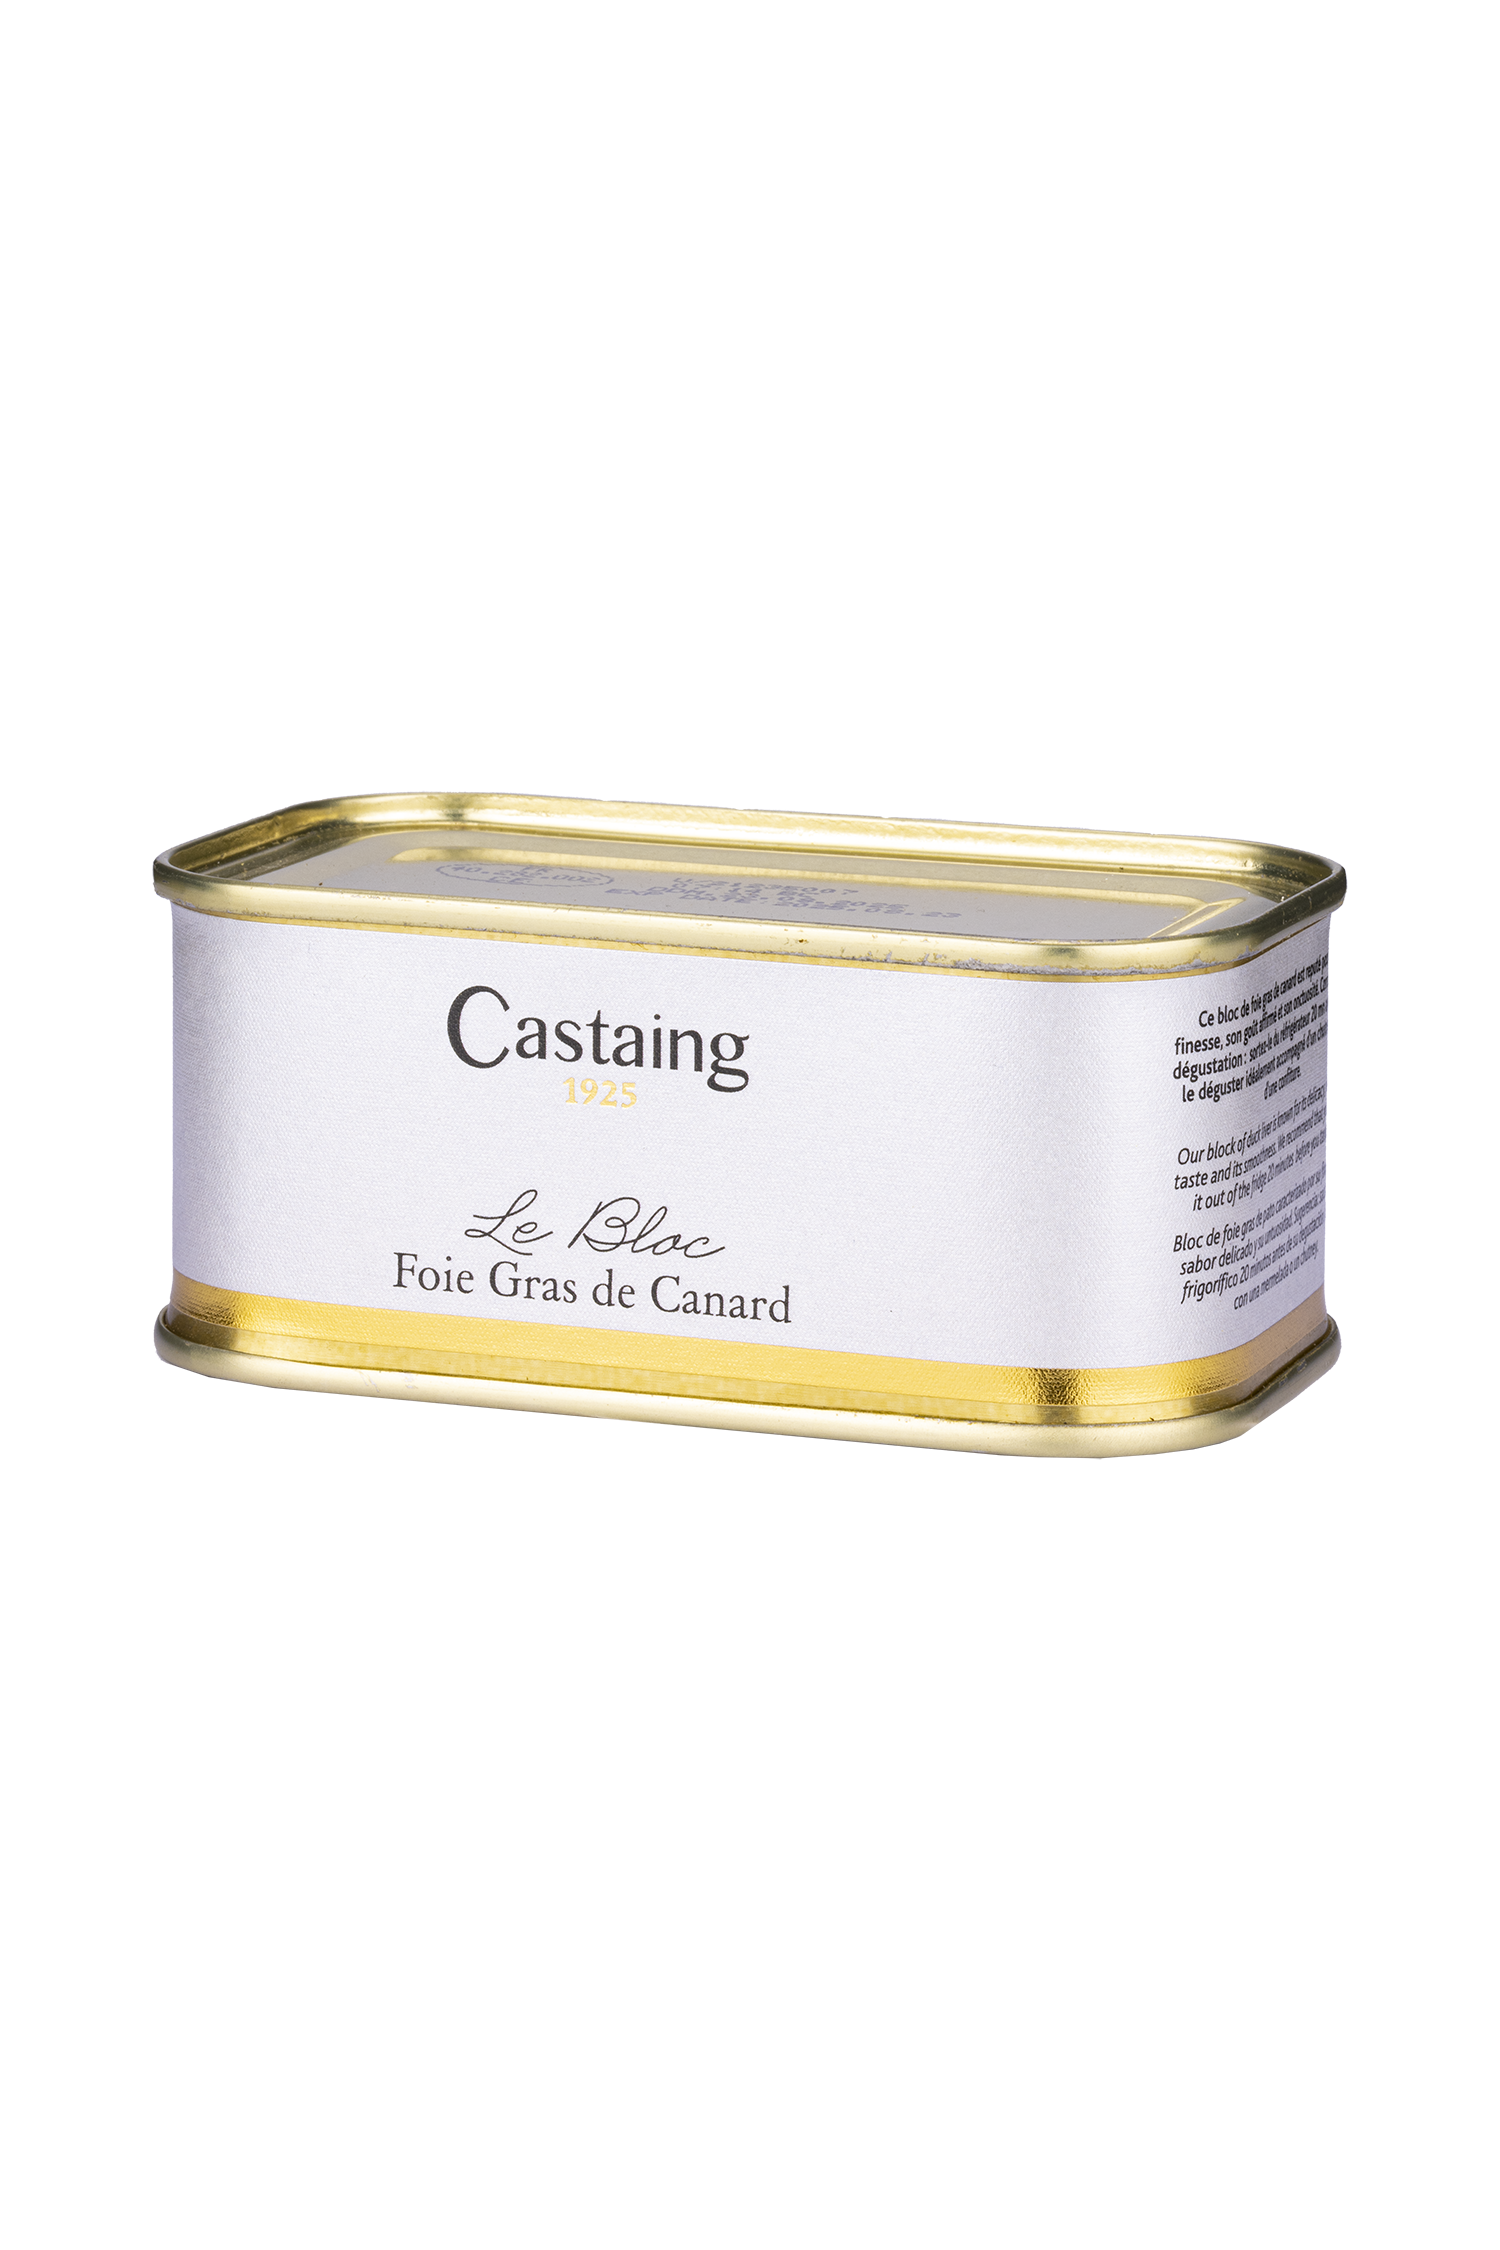 Foie Gras de Canard - Castaing